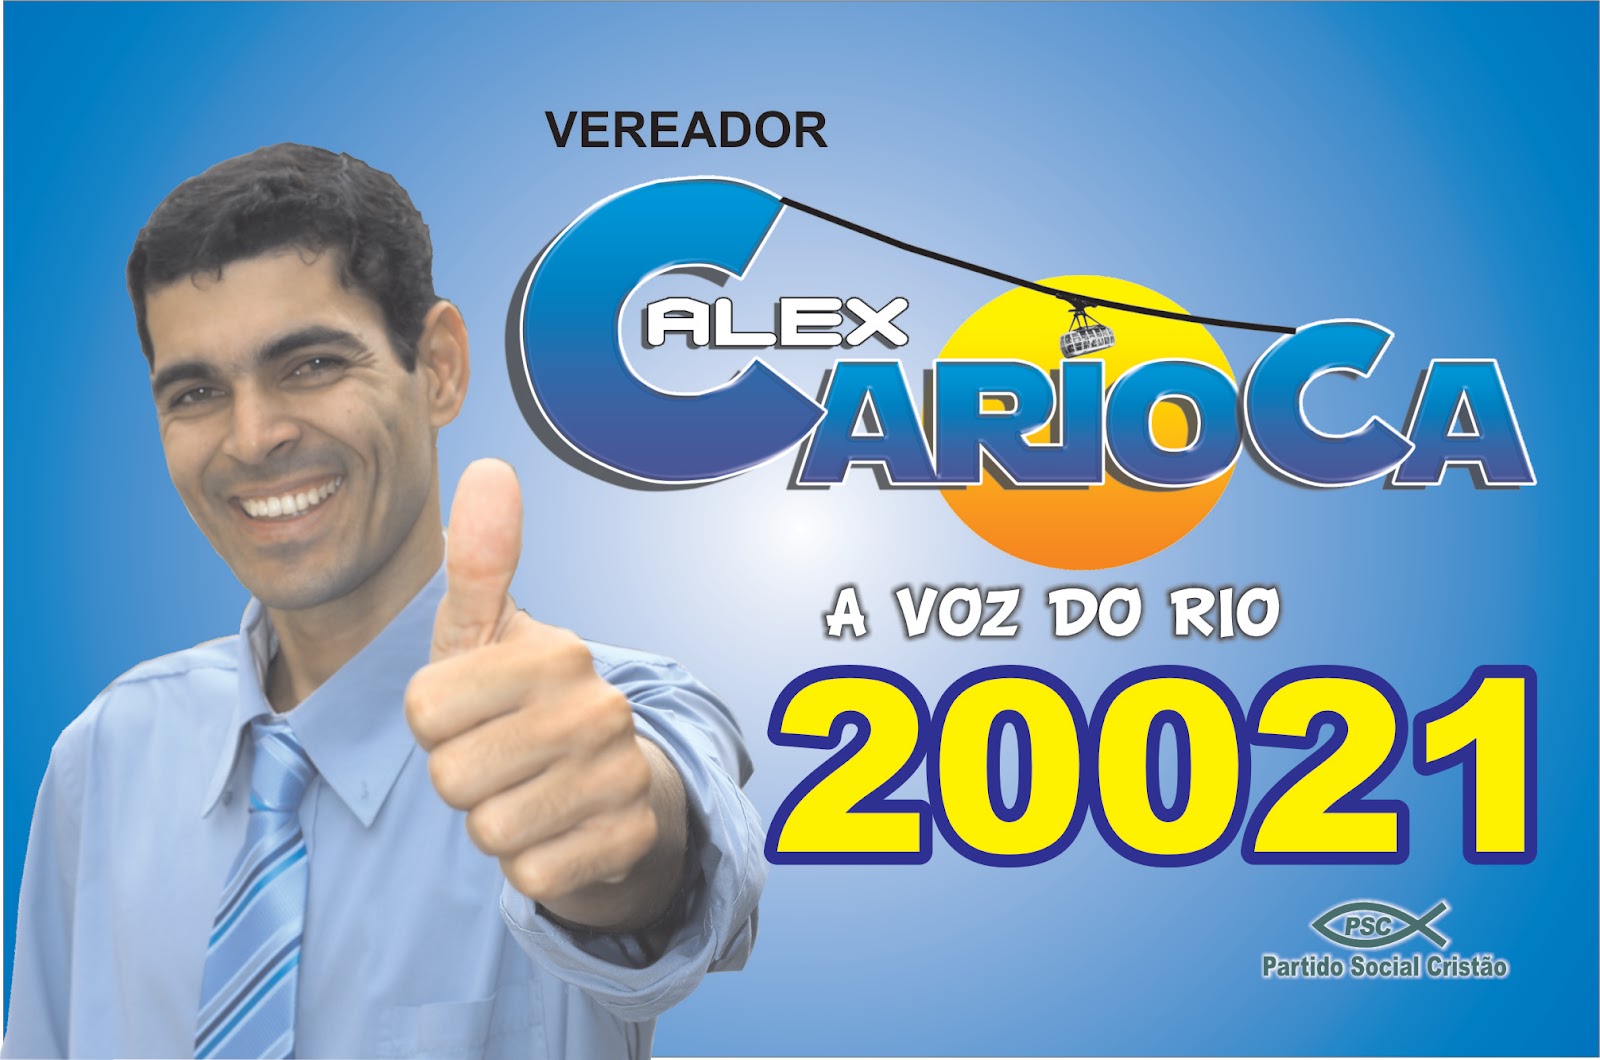 Alex Carioca - A Voz do Rio!: Eleições 2012 - Vereador Alex Carioca